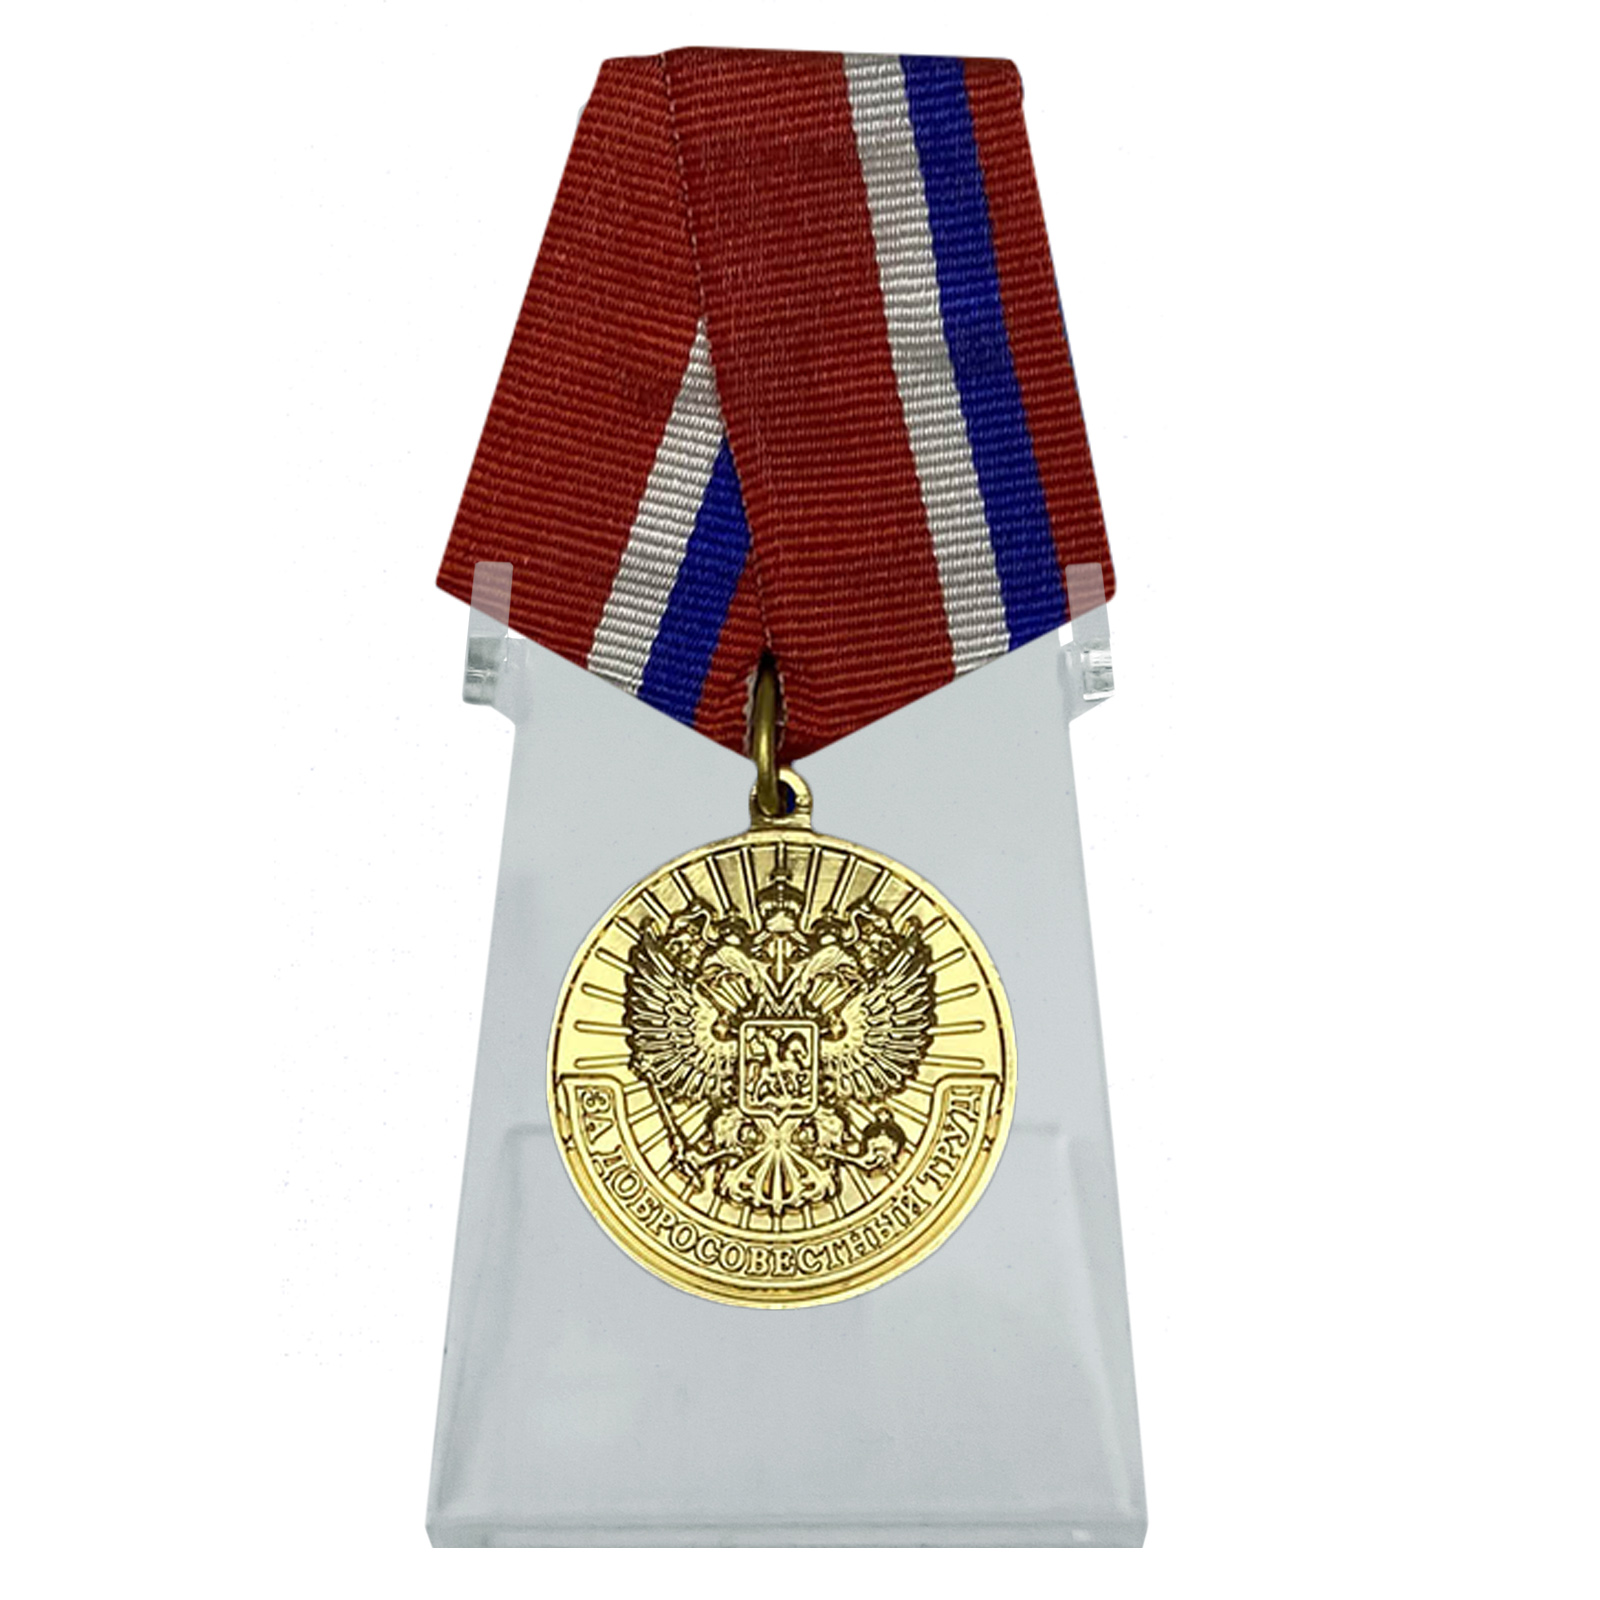 Медаль "За добросовестный труд" на подставке